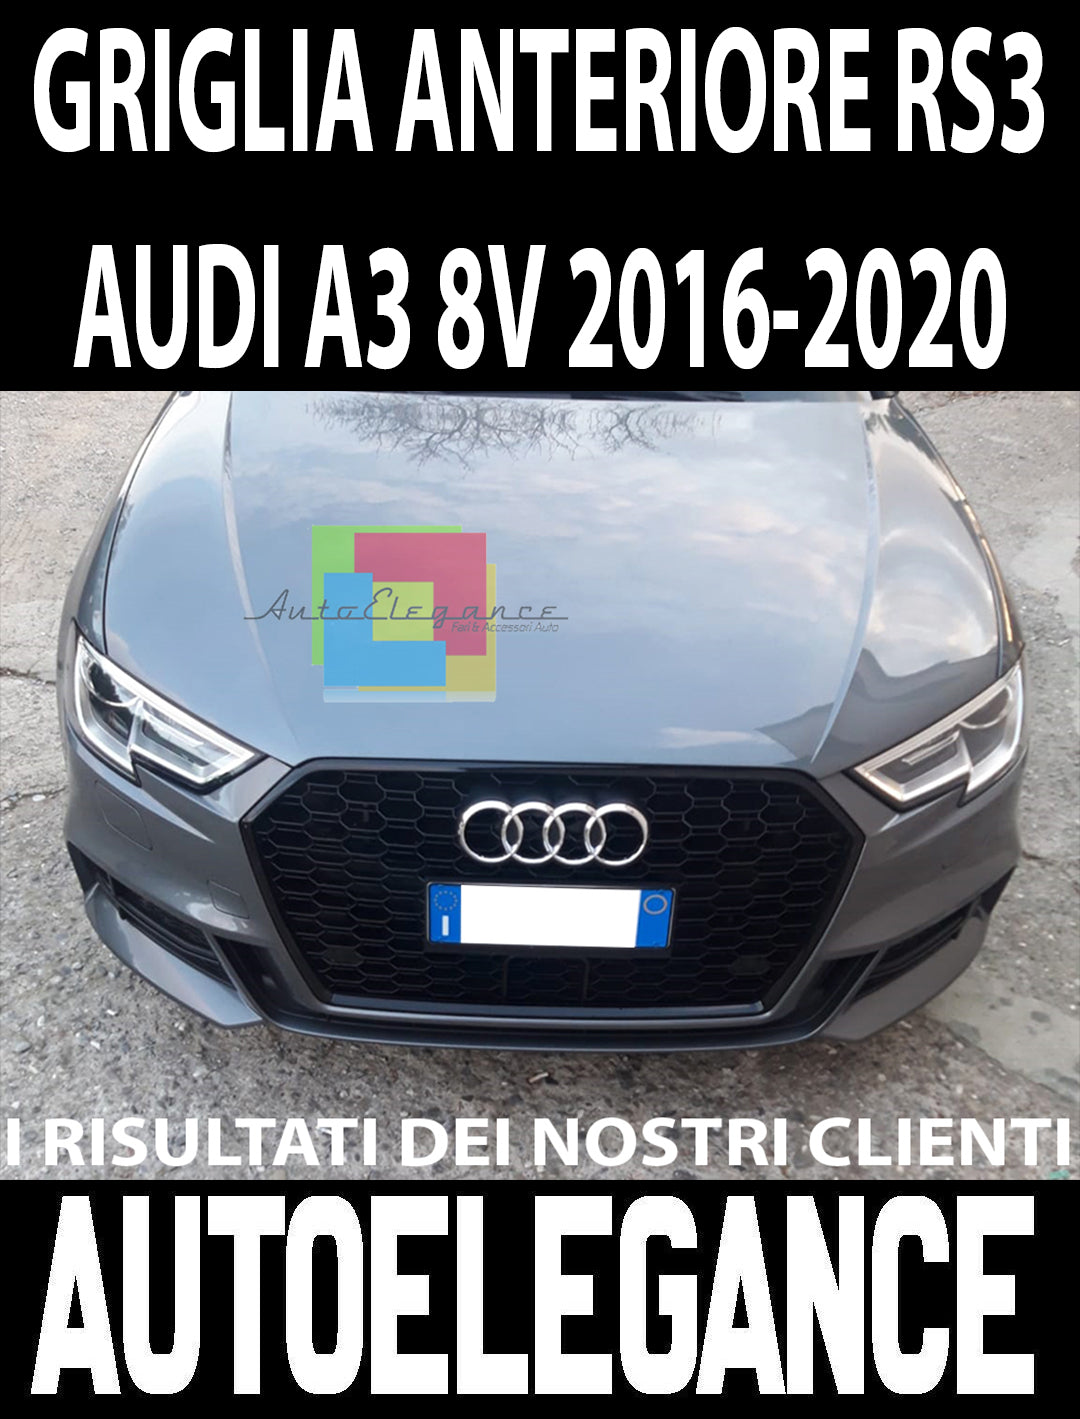 Audi A3 8V 2016-2020 Griglia Anteriore RS3 Look Nero Lucido